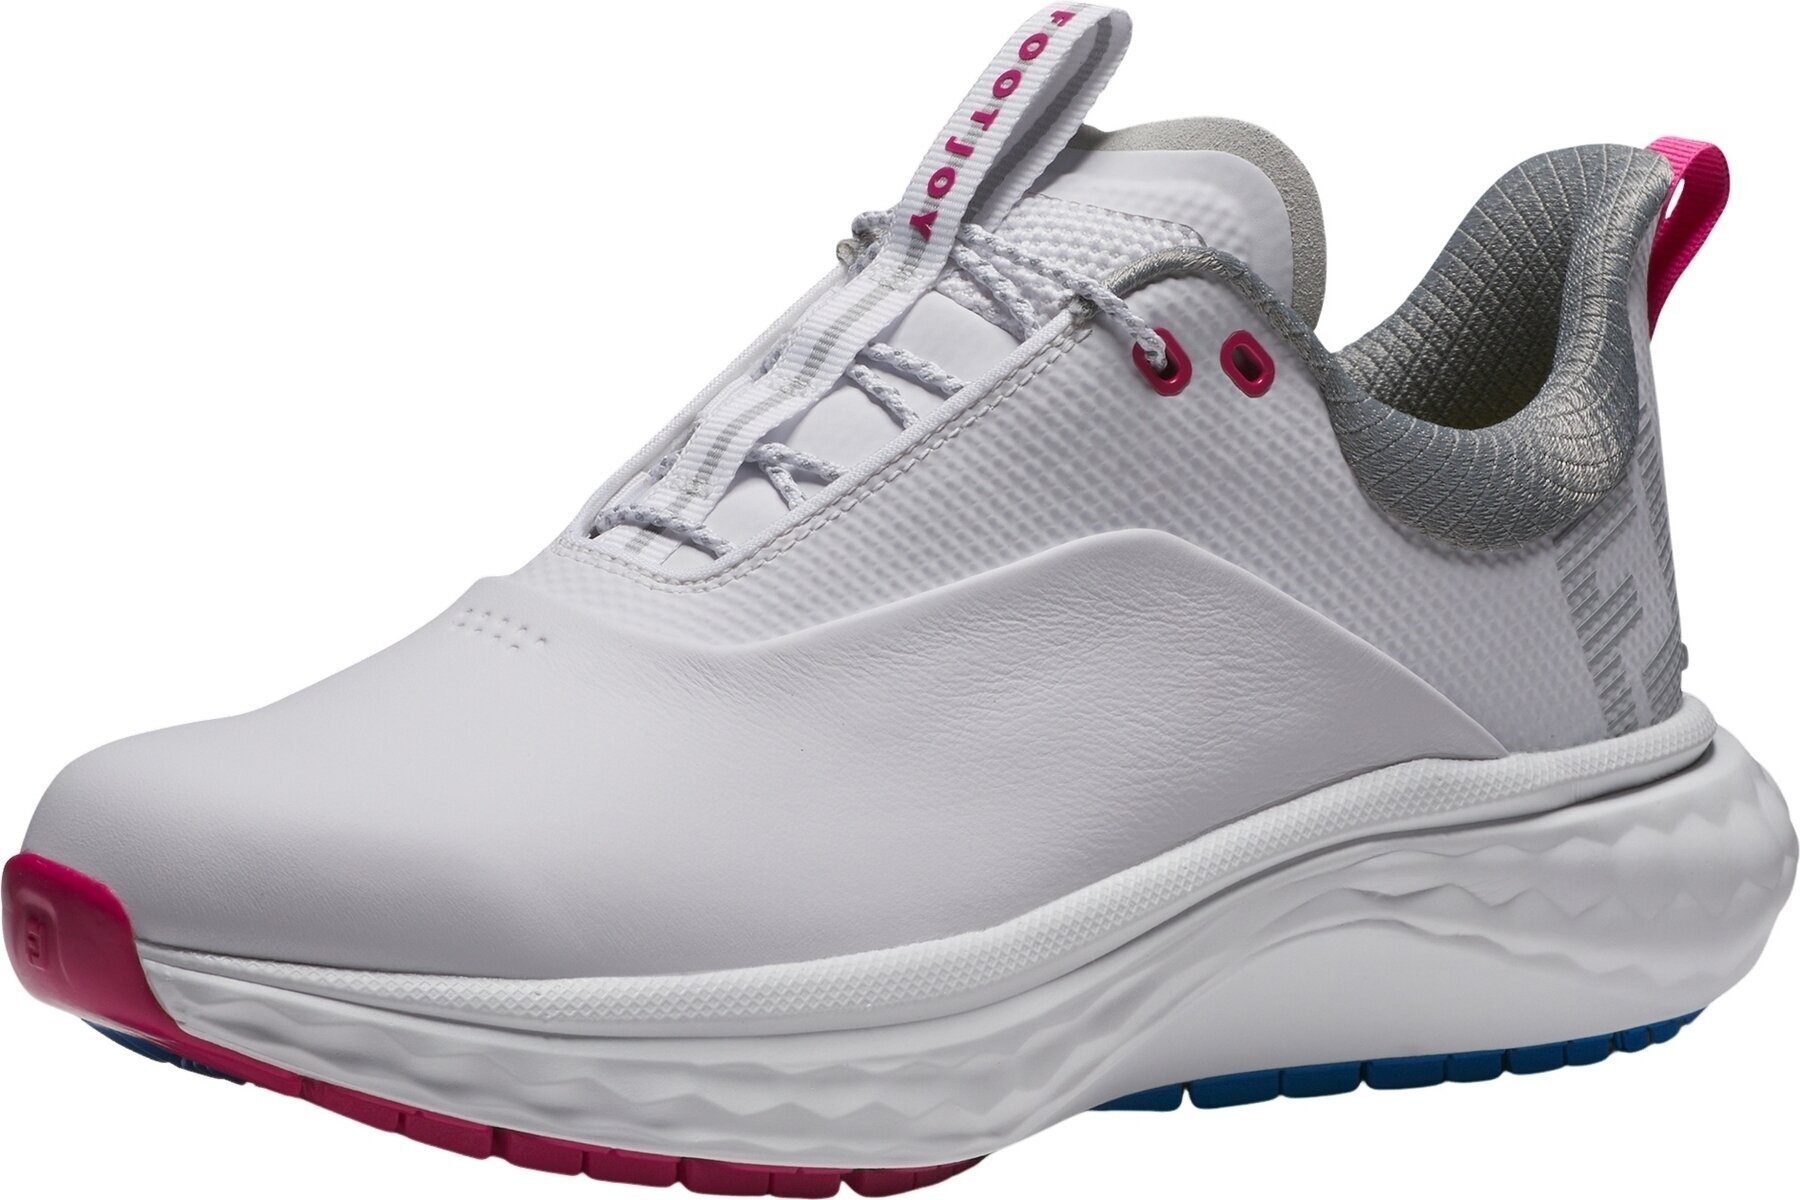 Calçado de golfe para mulher Footjoy Quantum Womens Golf Shoes White/Blue/Pink 42